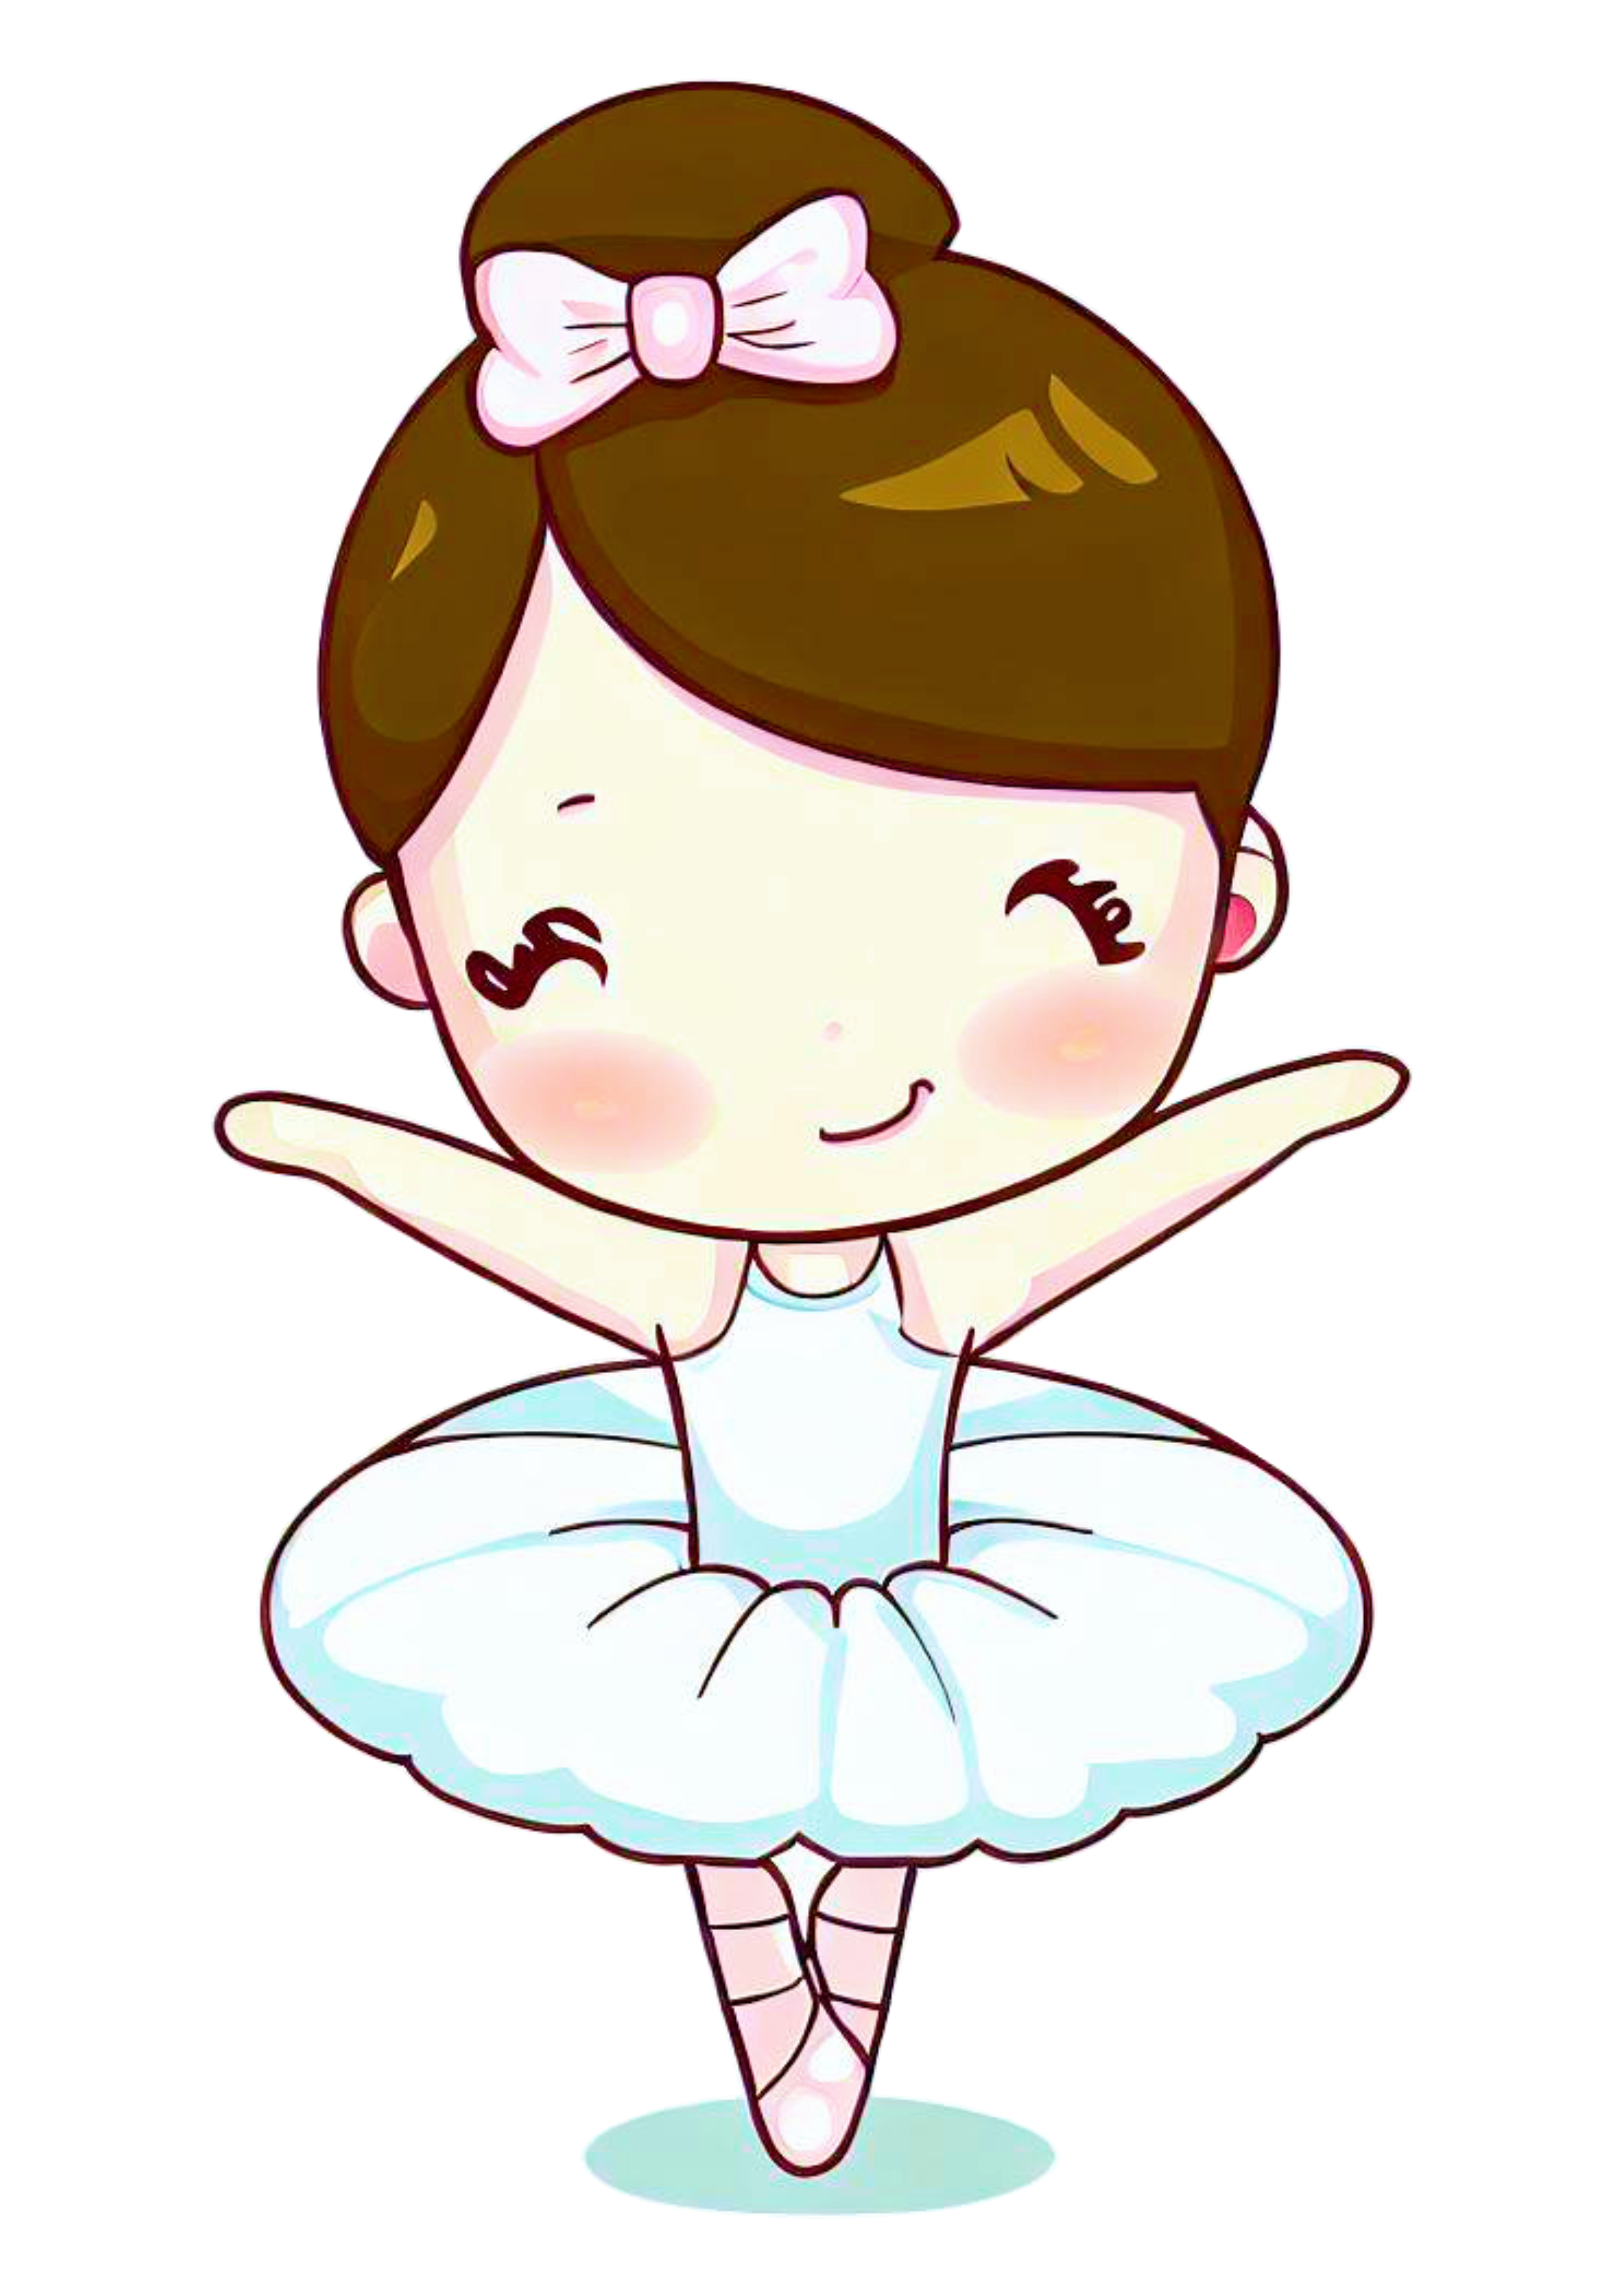 Bailarina bonequinha passos de balé vestido branco desenho com traços simples imagem sem fundo png